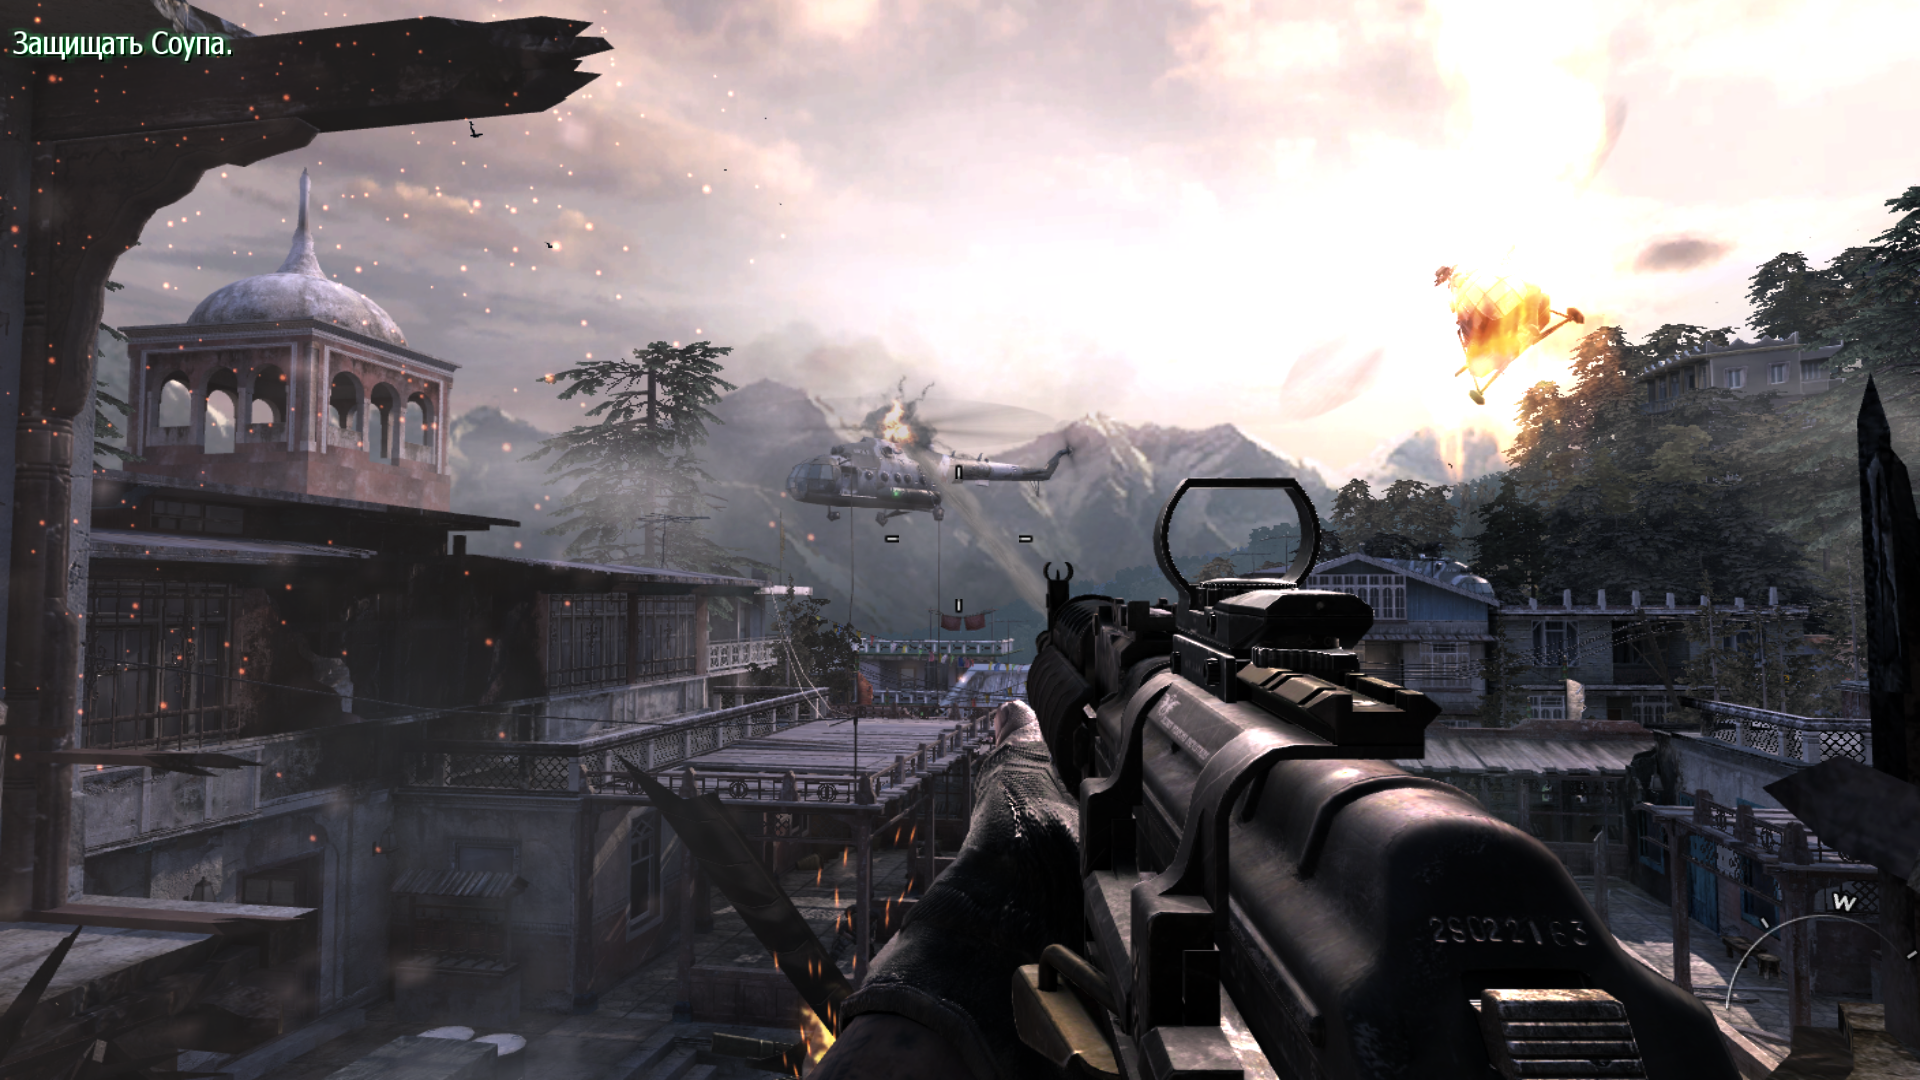 Игры звонок 3. Call of Duty: Modern Warfare 3. Call of Duty mw3. Калл оф дьюти Модерн варфаре 3. Калл оф дьюти Модерн варфэйр 3.